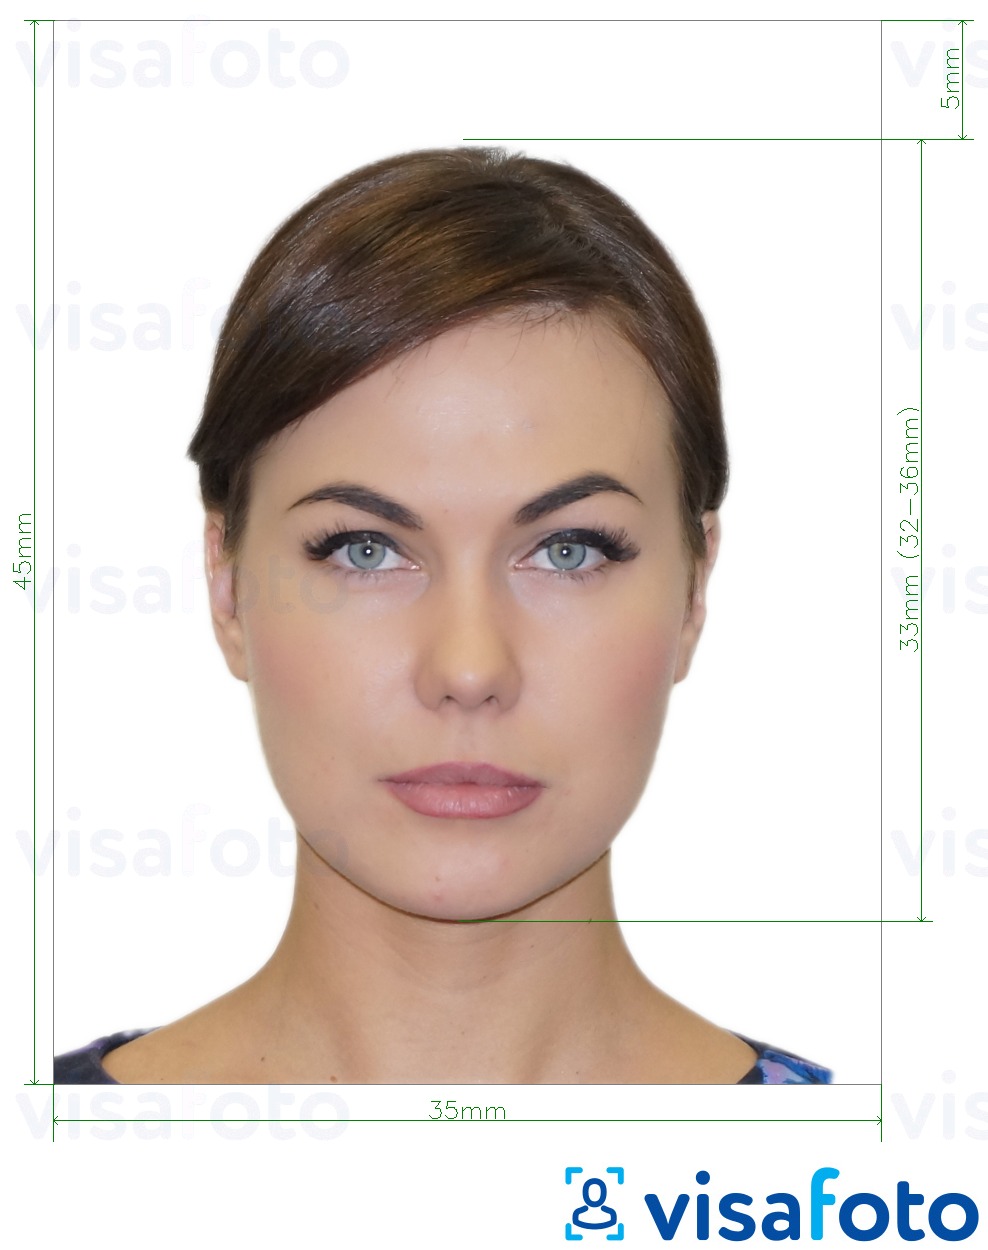 Exemple de foto per a Rússia Visa 35x45 mm (3,5x4,5 cm) amb la mida exacta especificada